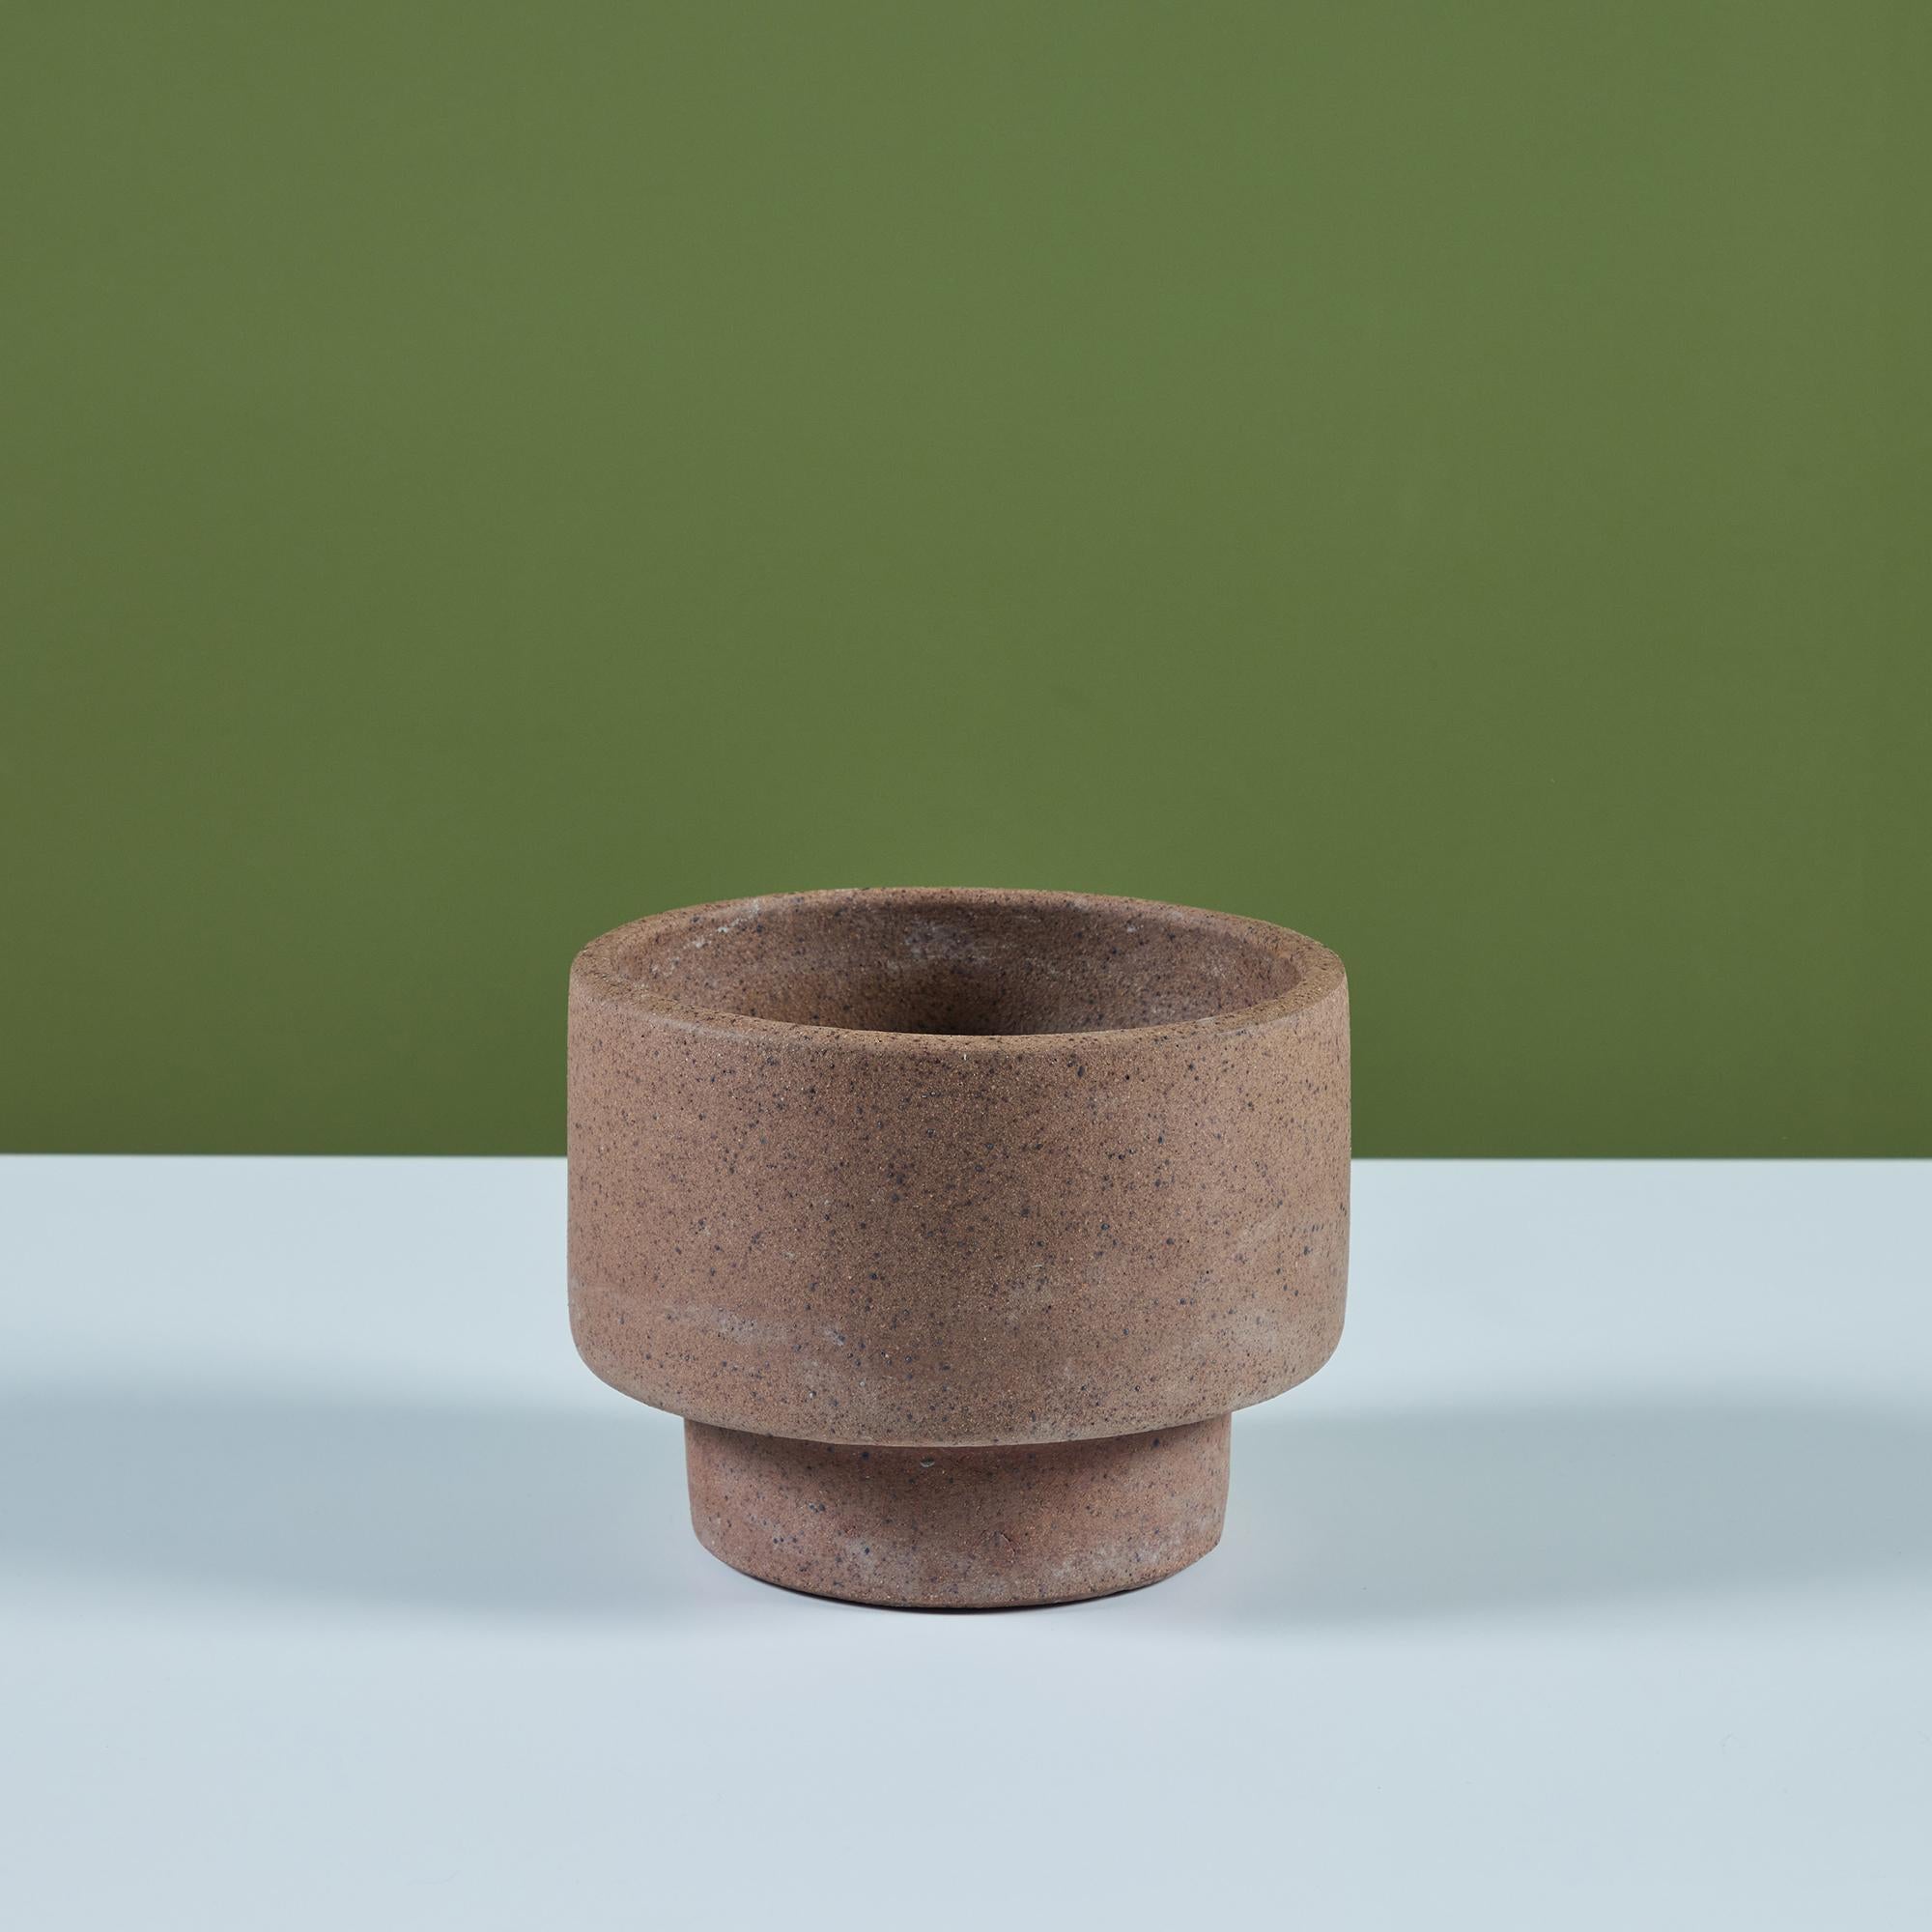 David Cressey Pro/Artisan Collection Pflanzgefäß für Architectural Pottery. Dieses Pflanzgefäß aus Steingut ist innen und außen aus unglasiertem, warmem braunem Ton.  Das zierliche Tischgefäß hat einen großen zylindrischen Korpus und verjüngt sich